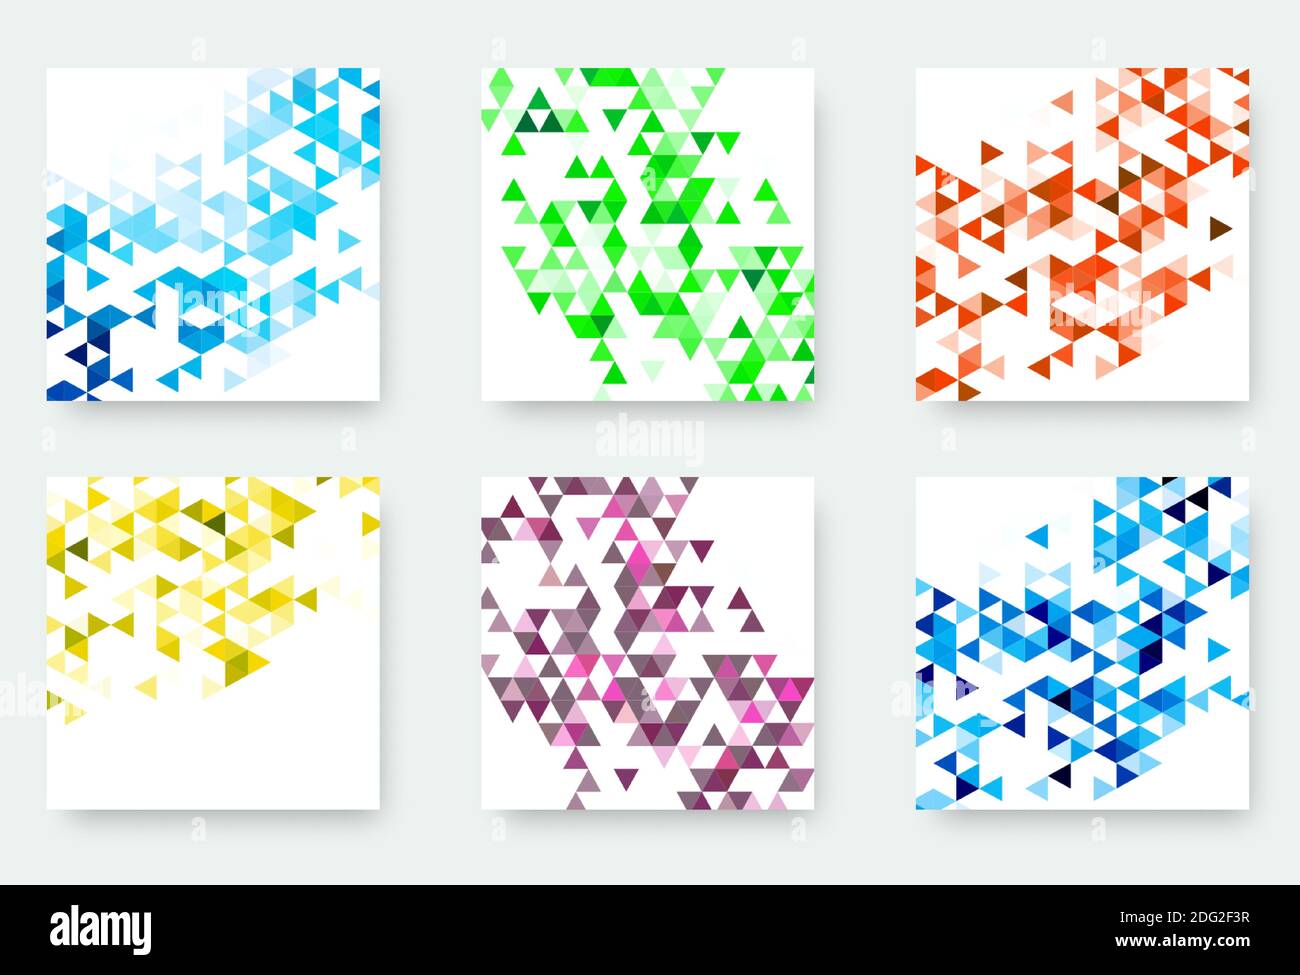 Collezione di banner vettoriali con sfondi astratti a mosaico triangolare multicolore. Moderni motivi geometrici. Modelli astratti di progettazione aziendale. Illustrazione Vettoriale